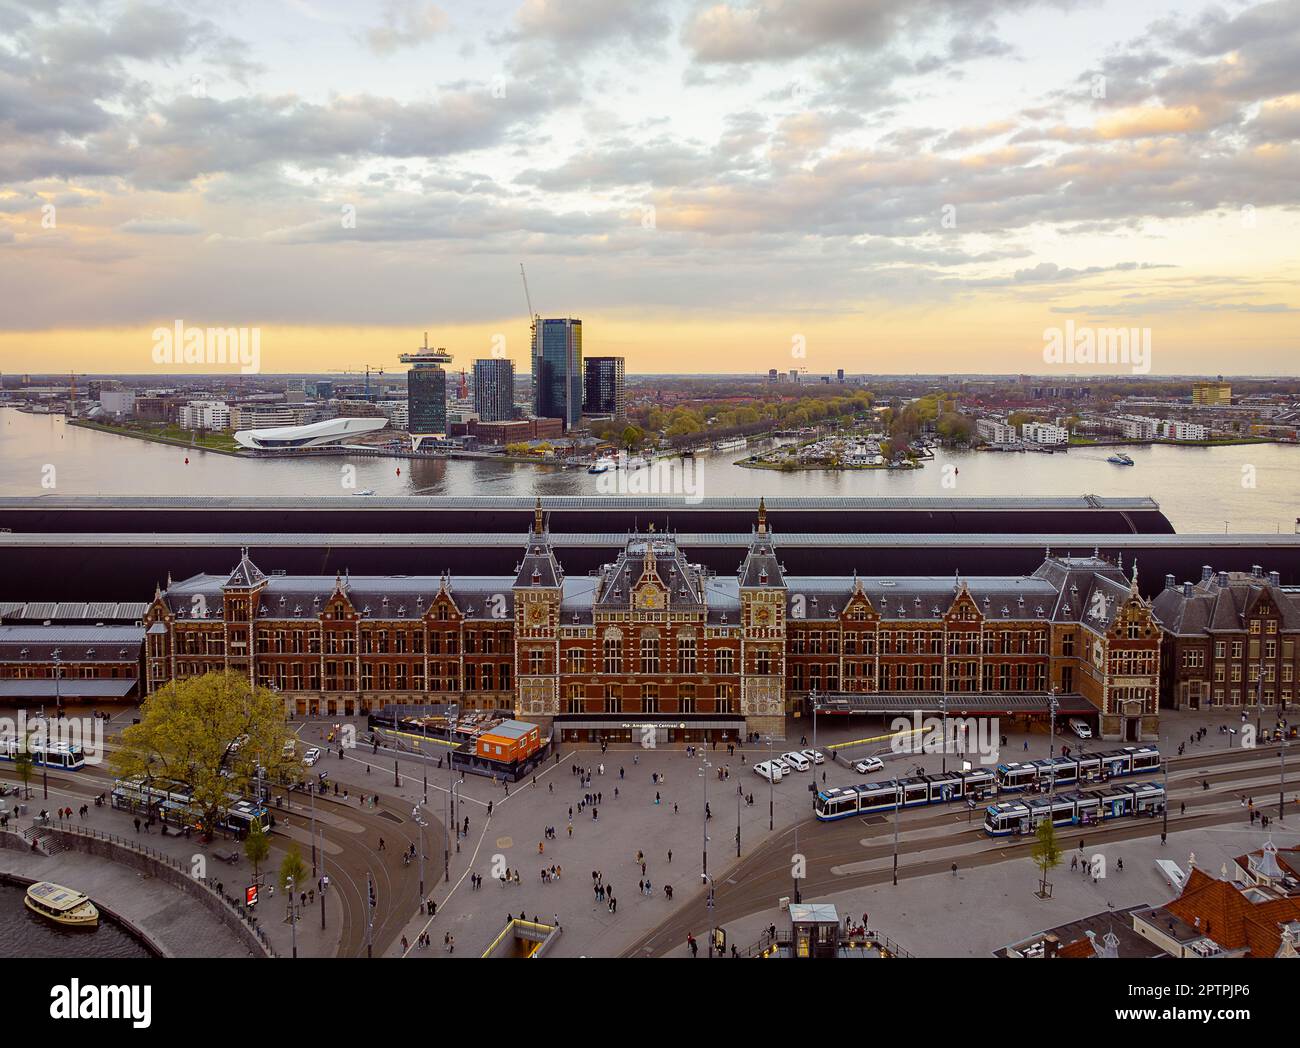 La gare centrale d'Amsterdam est un centre de transport à l'architecture impressionnante. Il offre l'accès à divers modes de transport et a des magasins, res Banque D'Images